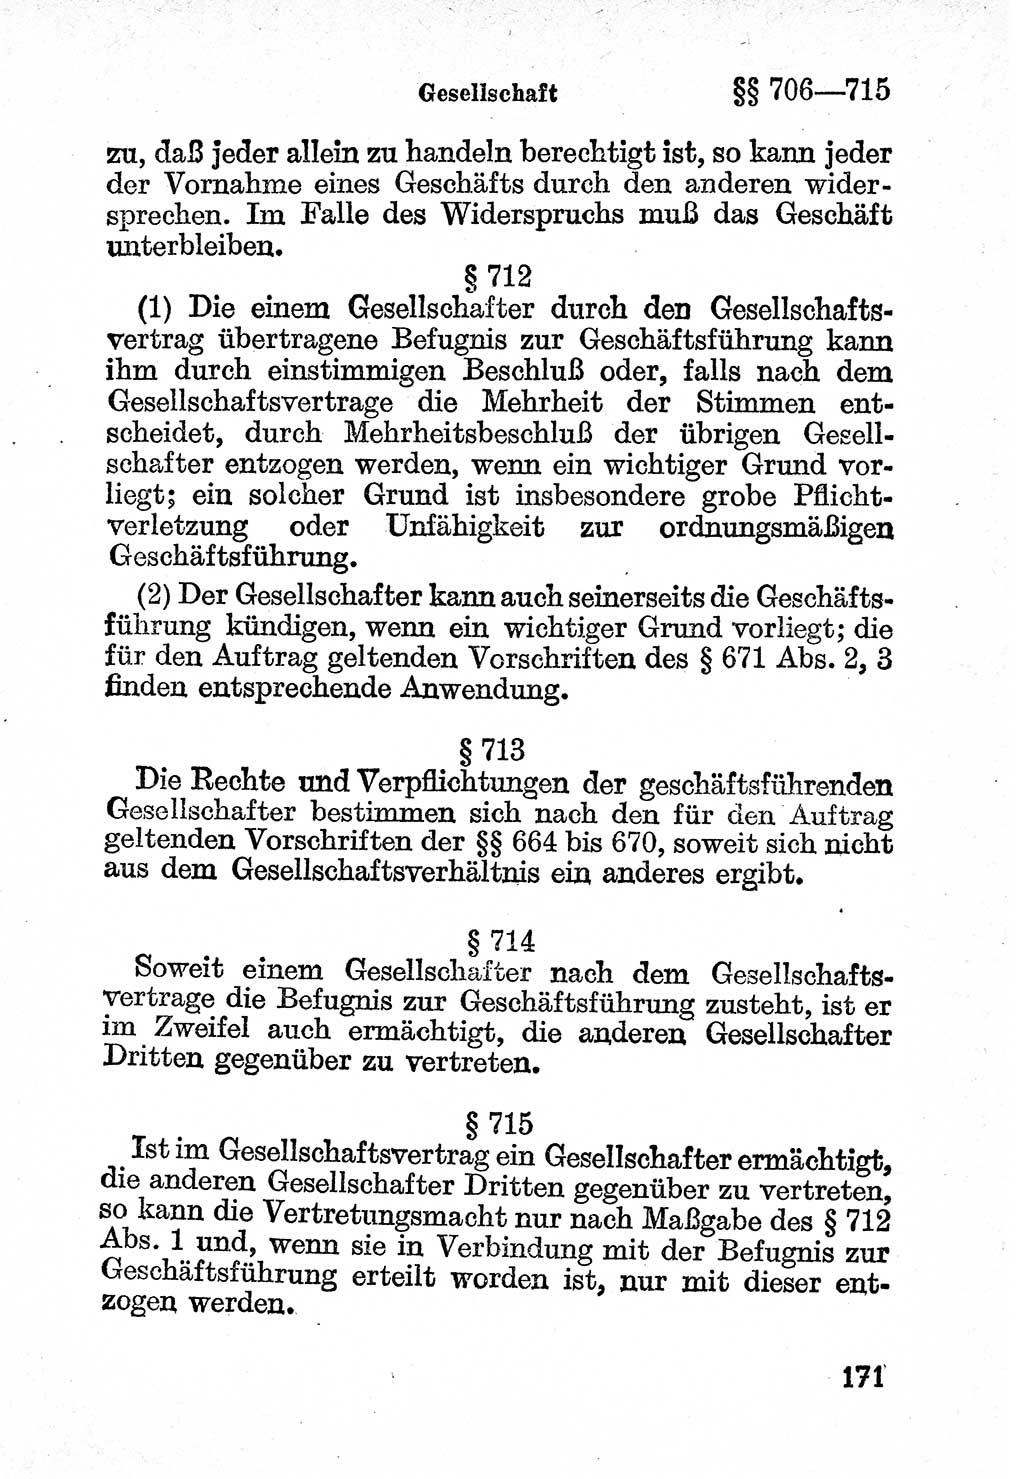 Bürgerliches Gesetzbuch (BGB) nebst wichtigen Nebengesetzen [Deutsche Demokratische Republik (DDR)] 1956, Seite 171 (BGB Nebenges. DDR 1956, S. 171)